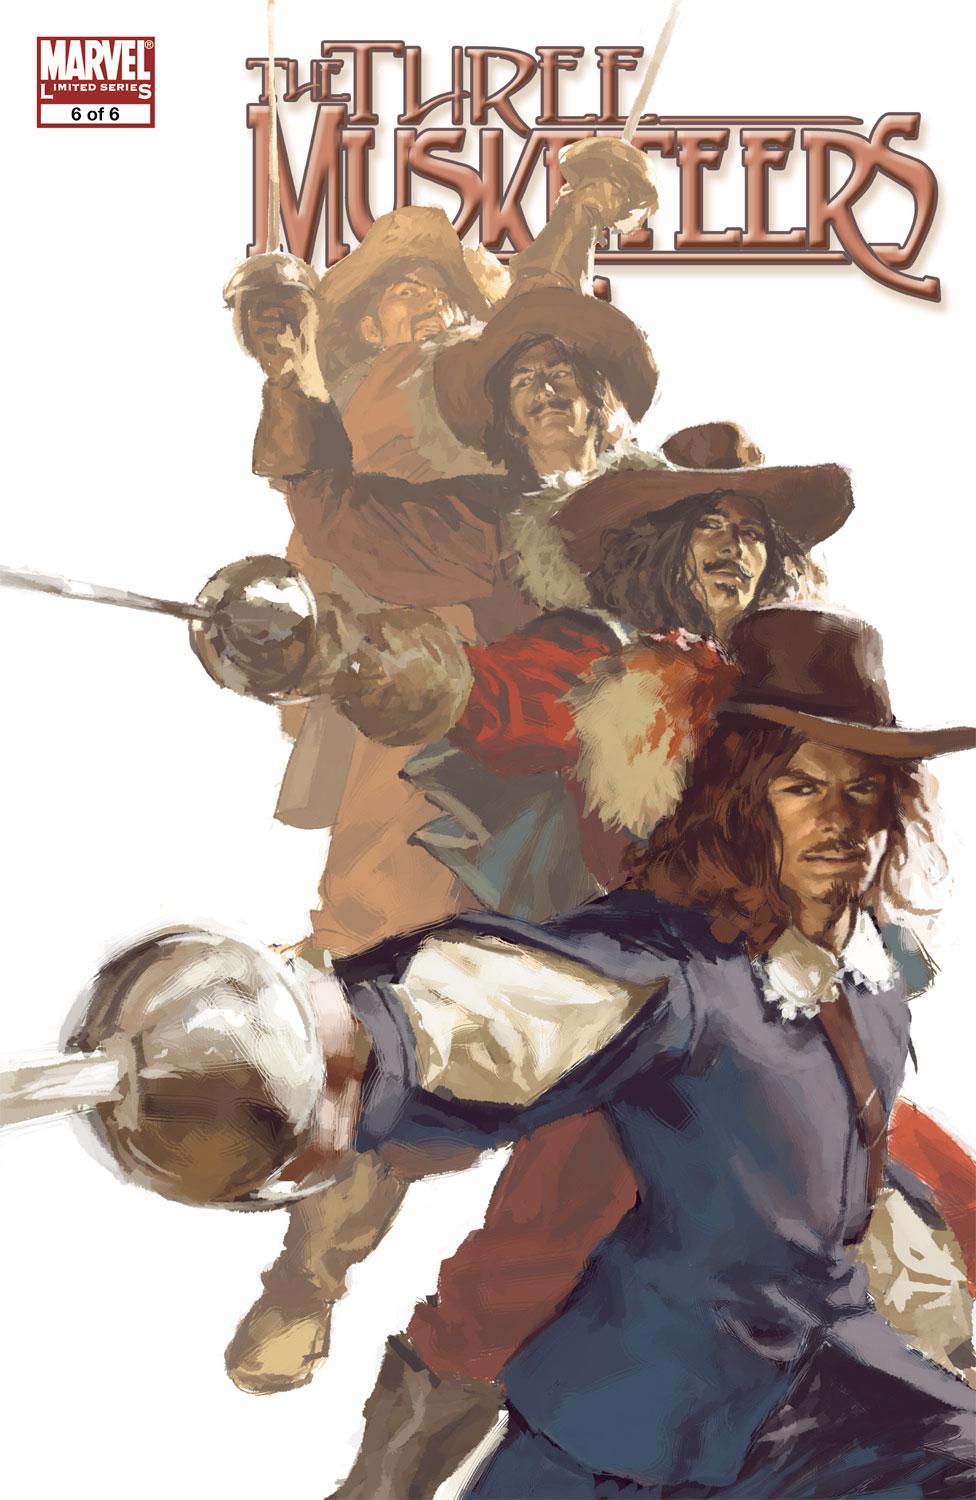 Marvel Illustrated: The Three Musketeers (2008) #6